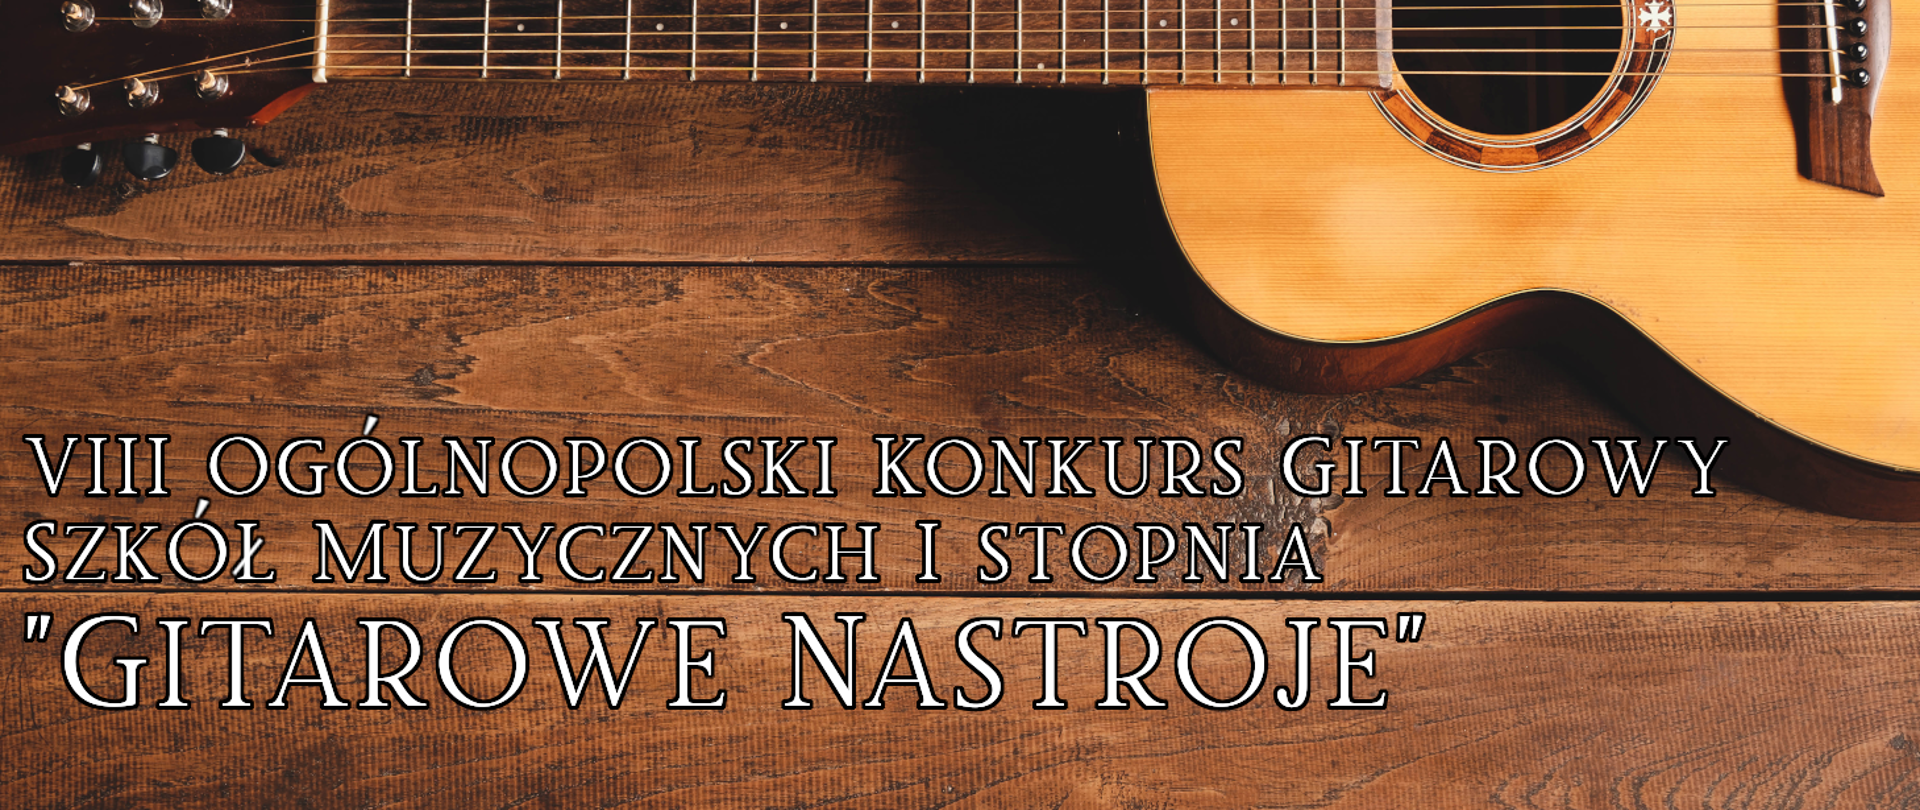 Baner VIII Ogólnopolskiego Konkursu Gitarowego Szkół Muzycznych I stopnia "Gitarowe NasTroje". Biały napis z nazwą konkursu na tle drewnianych desek i gitary.